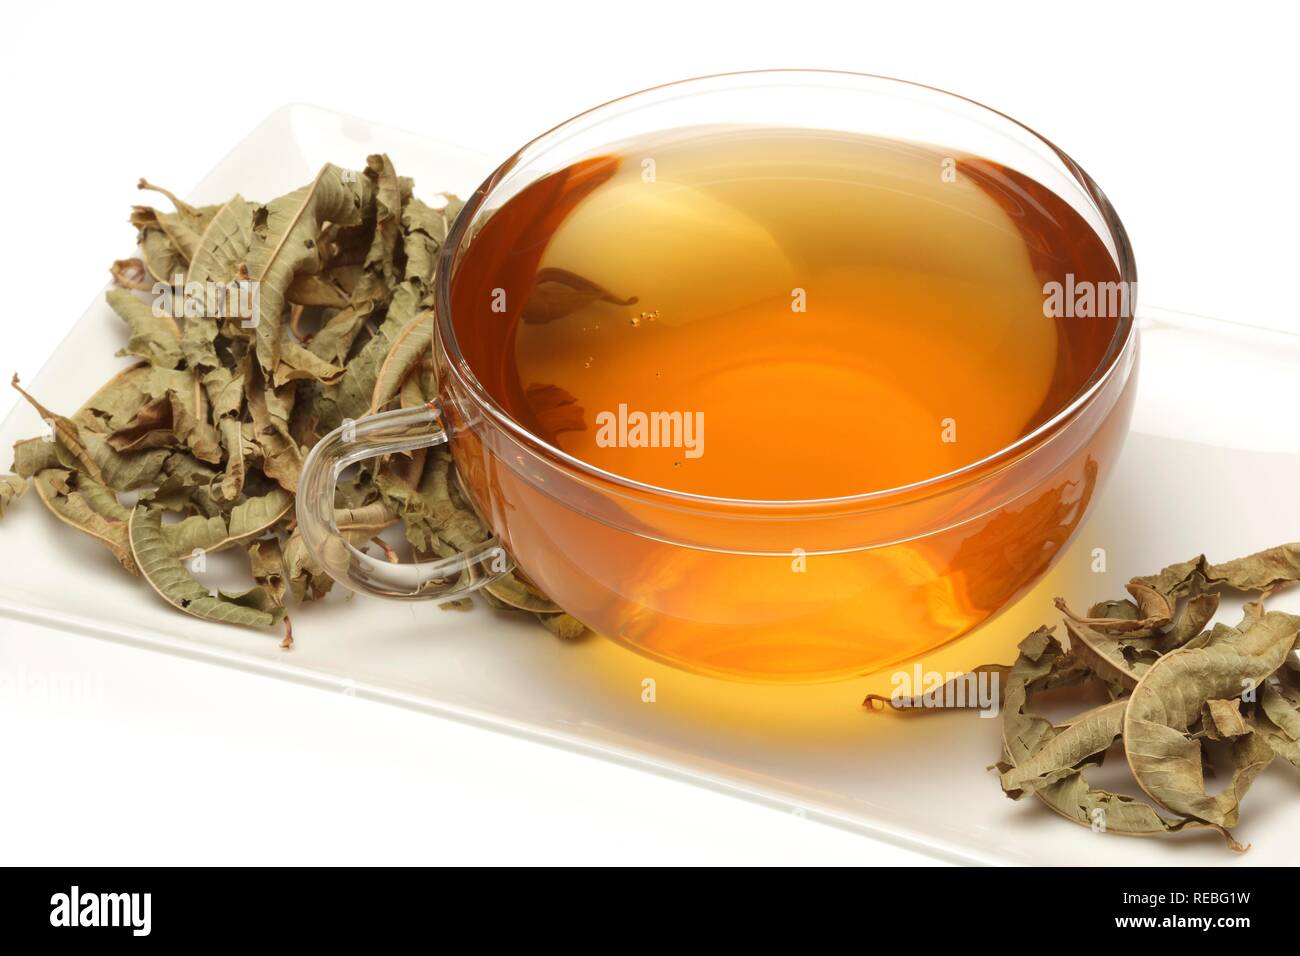 Arzneimittel Tee, Kaffee aus gemeinsamen Verbene, Eisenkraut, Kraut der Gnade, (Verbena officinalis) Stockfoto